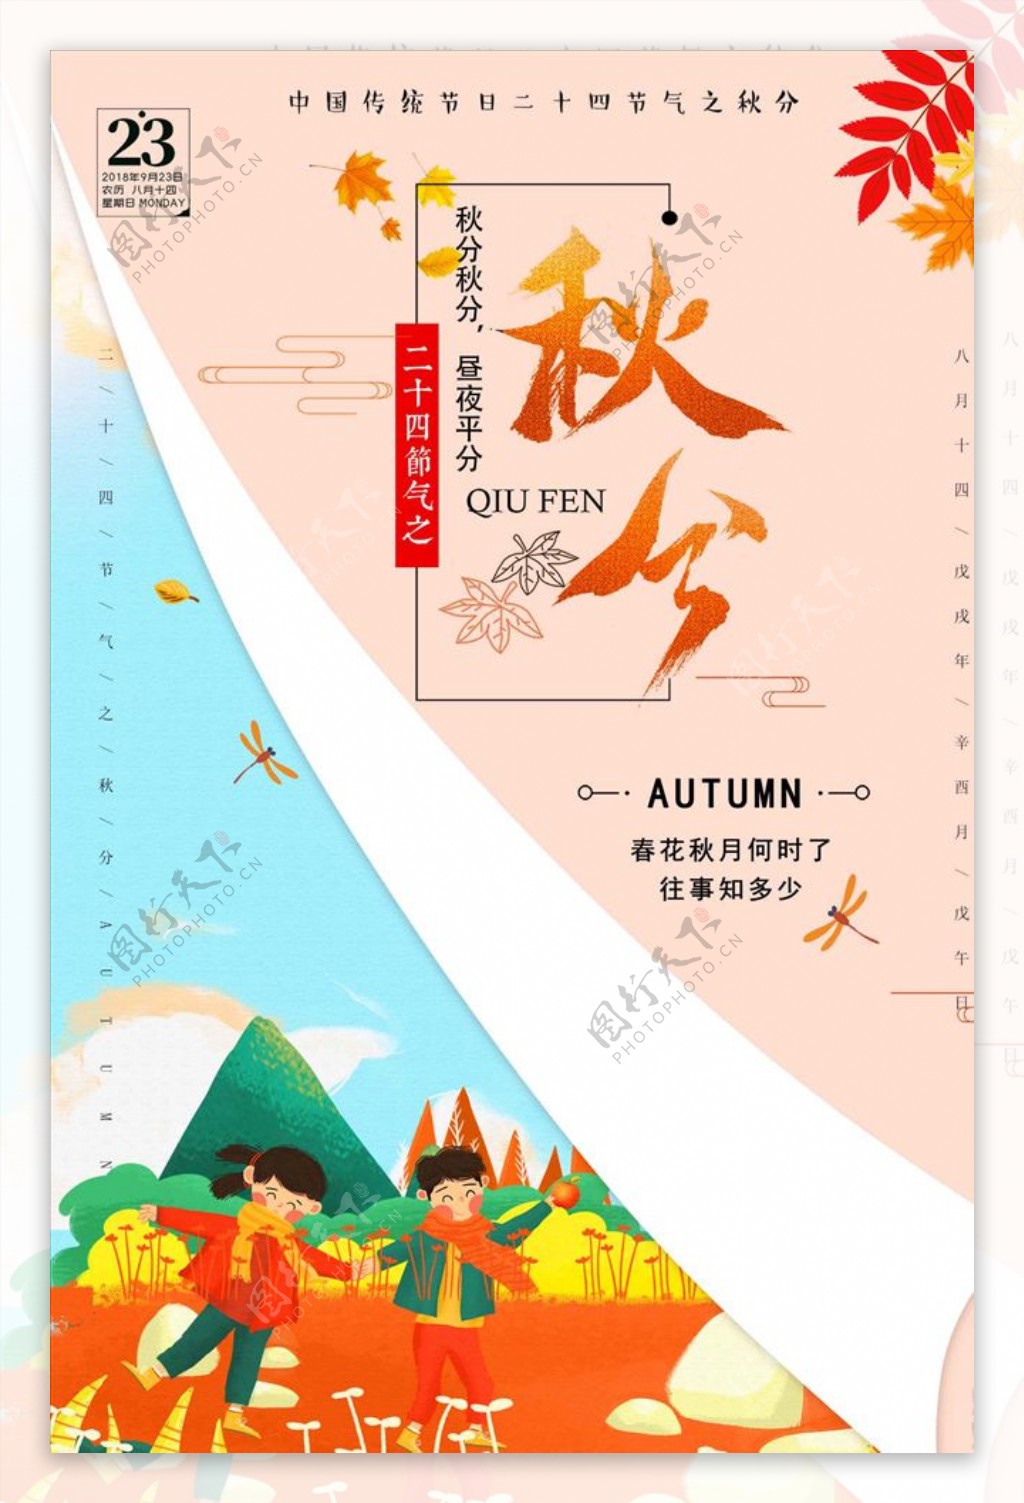 传统节气秋分淡雅简约海报设计